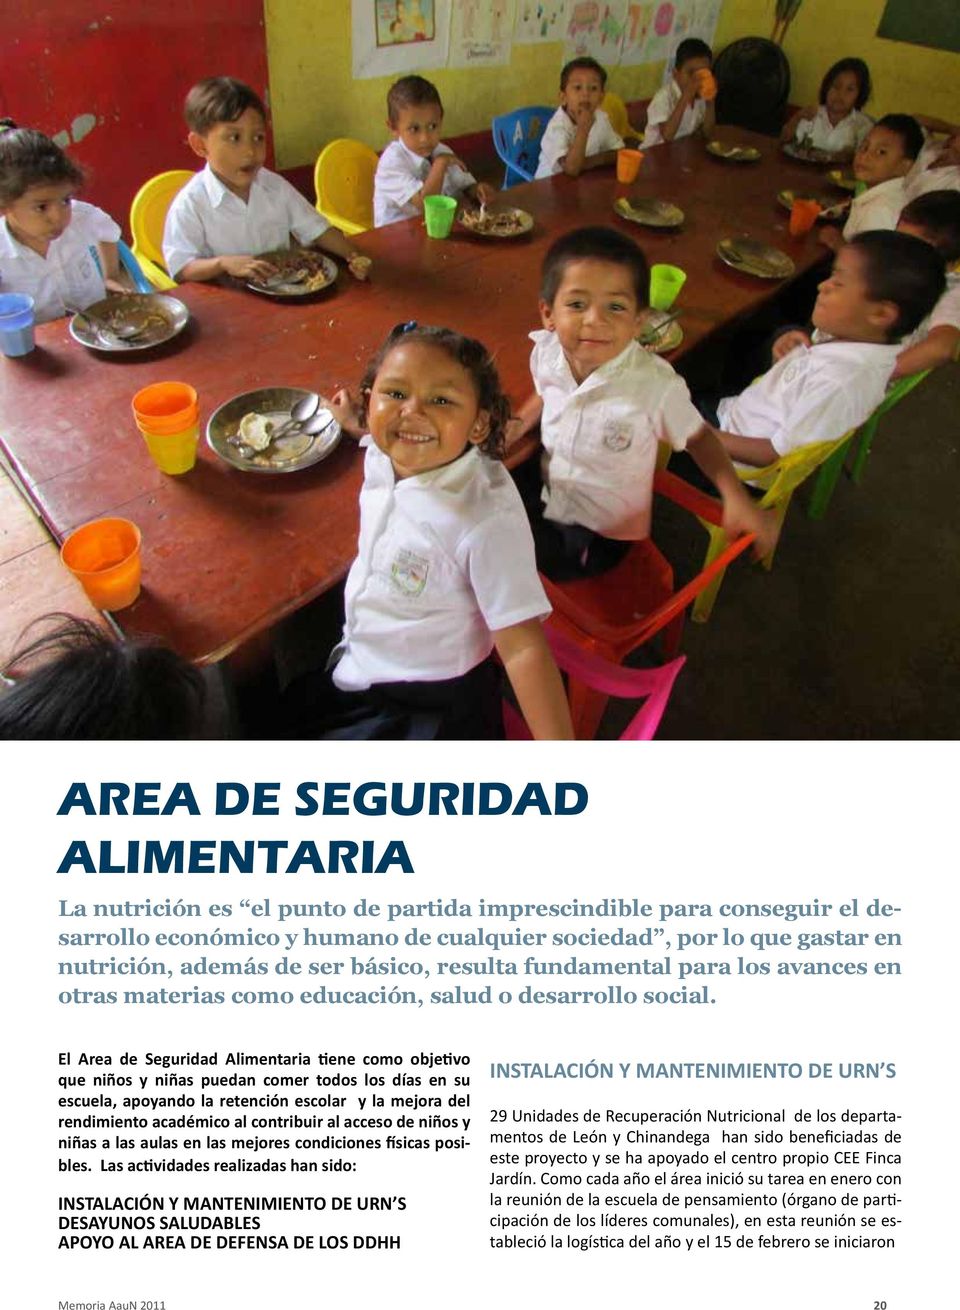 El Area de Seguridad Alimentaria tiene como objetivo que niños y niñas puedan comer todos los días en su escuela, apoyando la retención escolar y la mejora del rendimiento académico al contribuir al